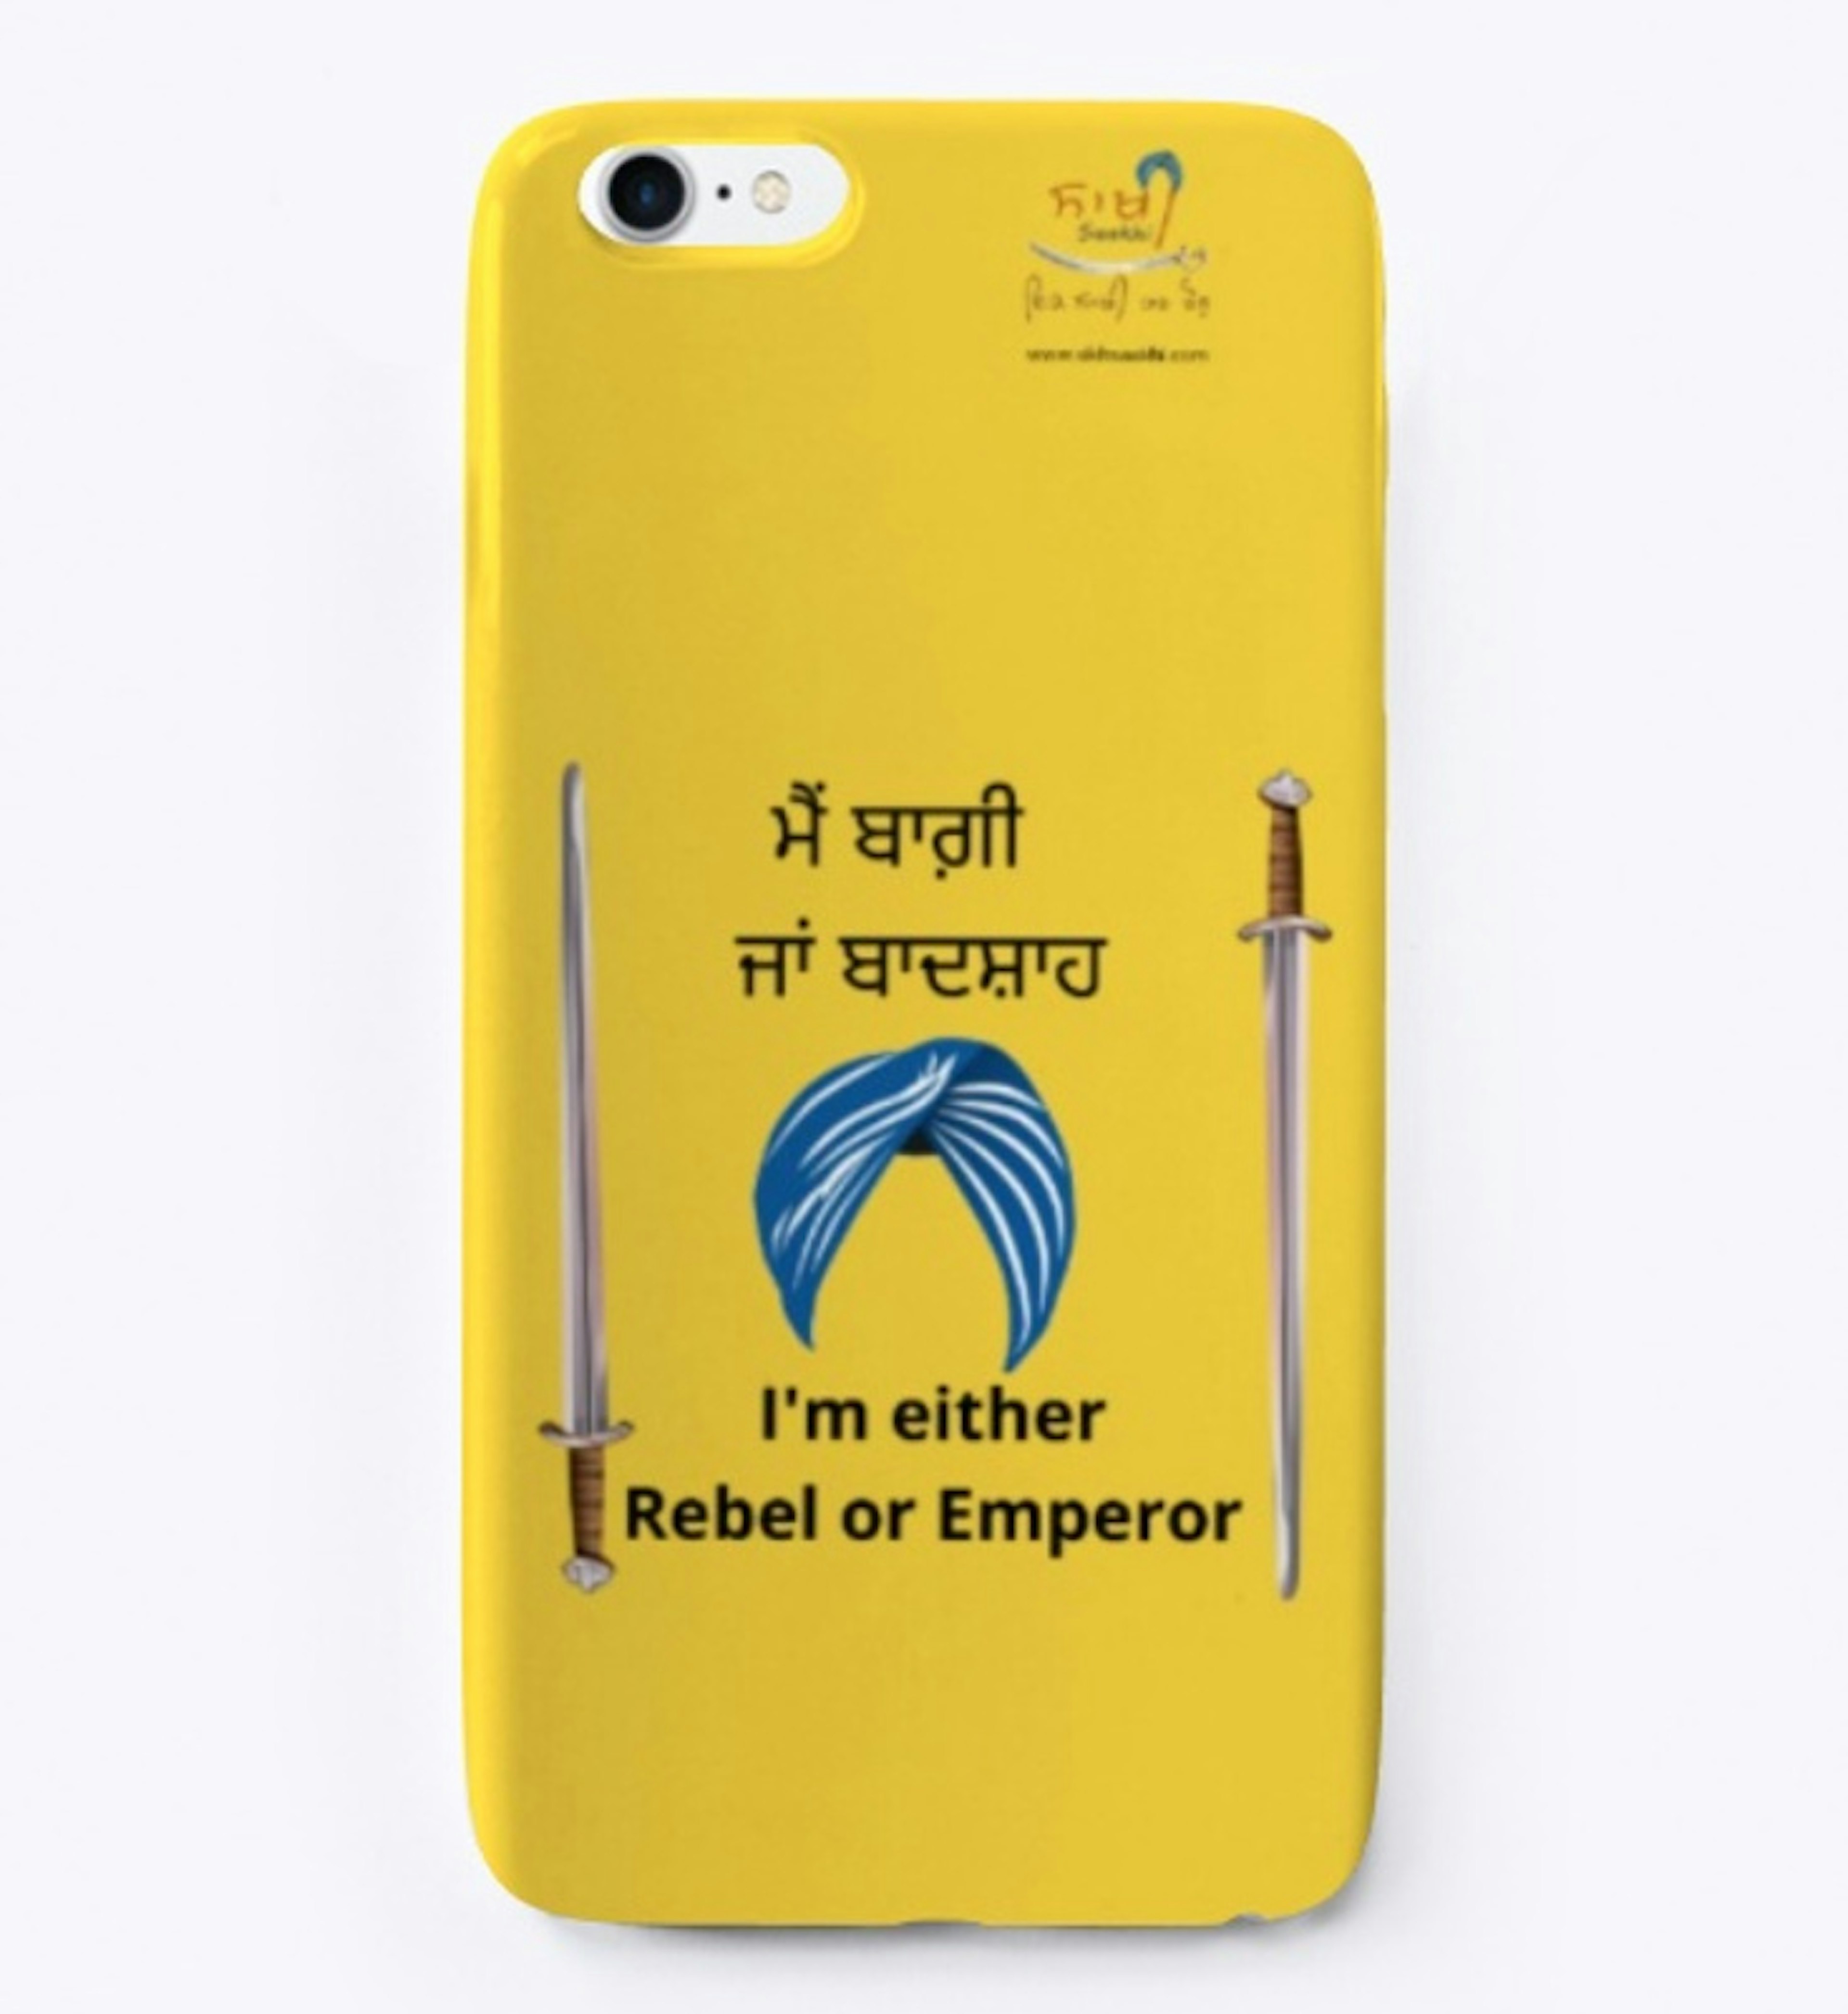 Rebel or Emperor